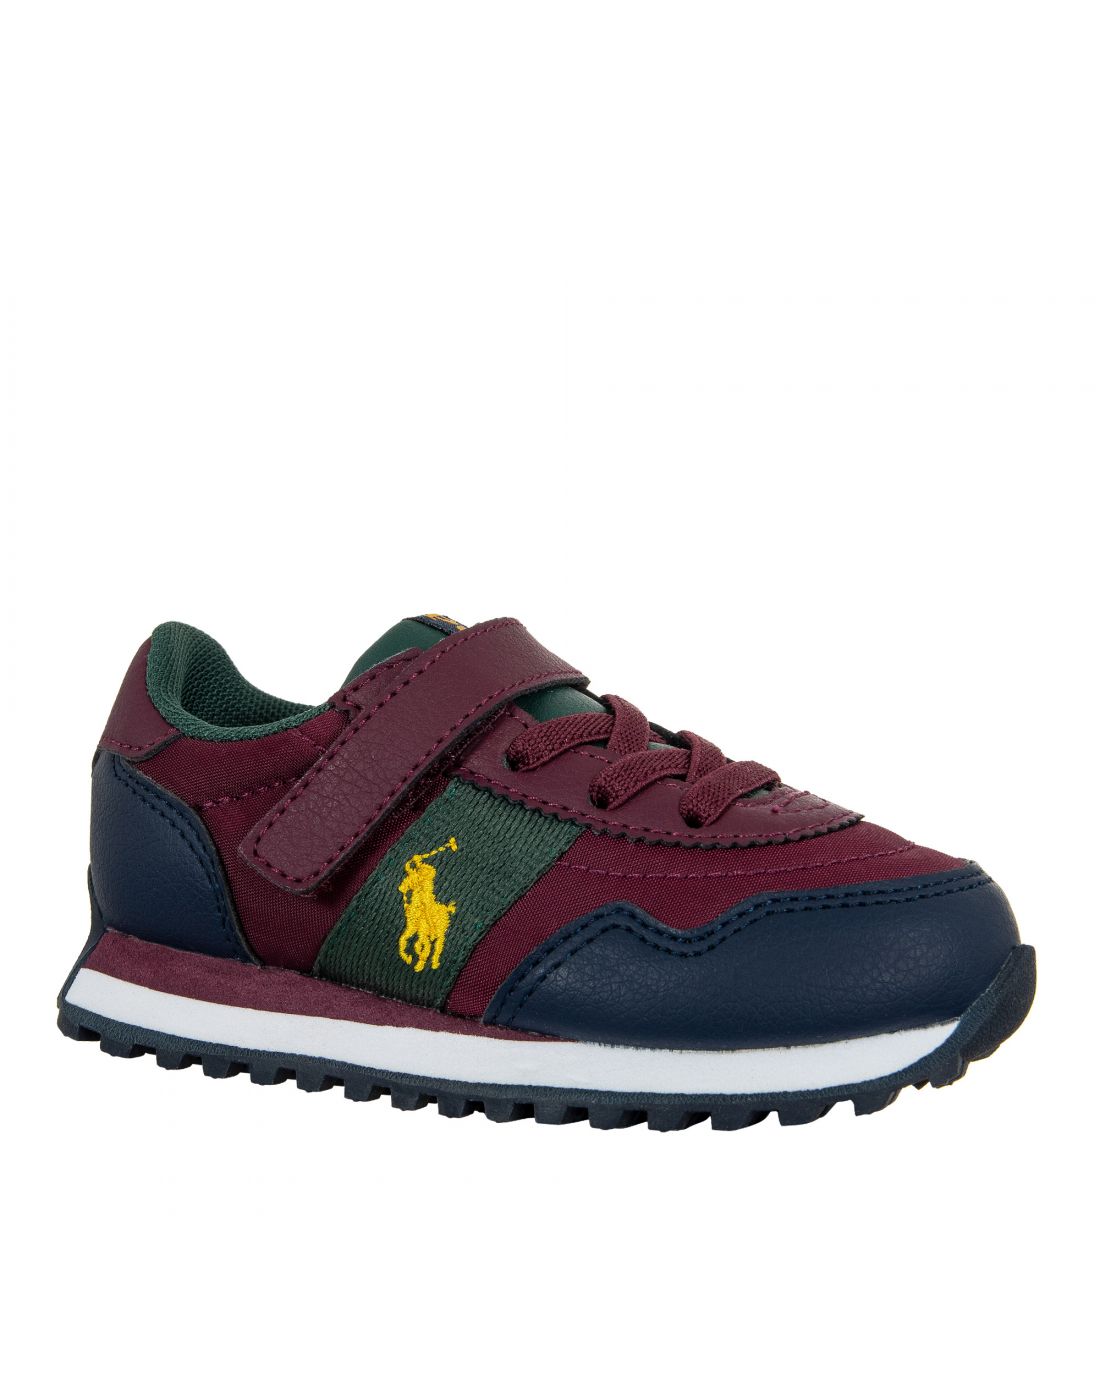 Παιδικά Παπούτσια Sneakers Polo Ralph Lauren, Polo Ralph Lauren, 23265395 |  LapinKids.com | LAPIN KIDS